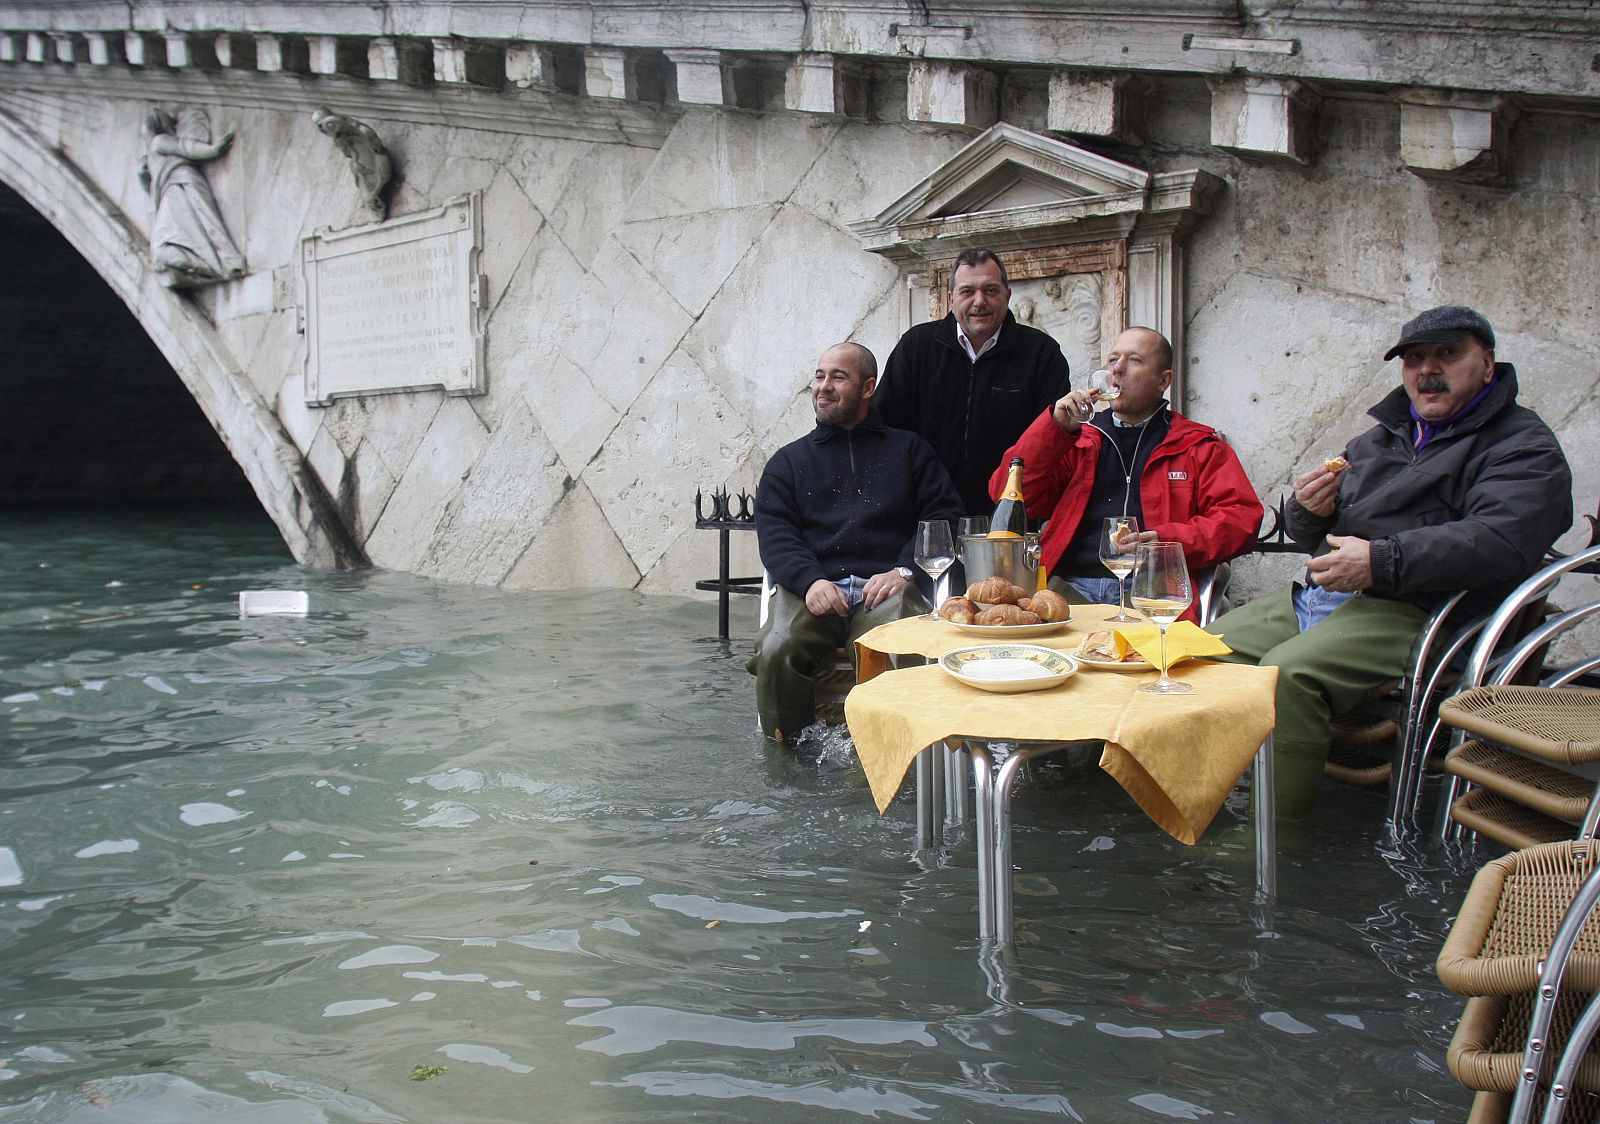 Un grupo de gondoleros desayuna en Venecia a los pies de un puente inundado.